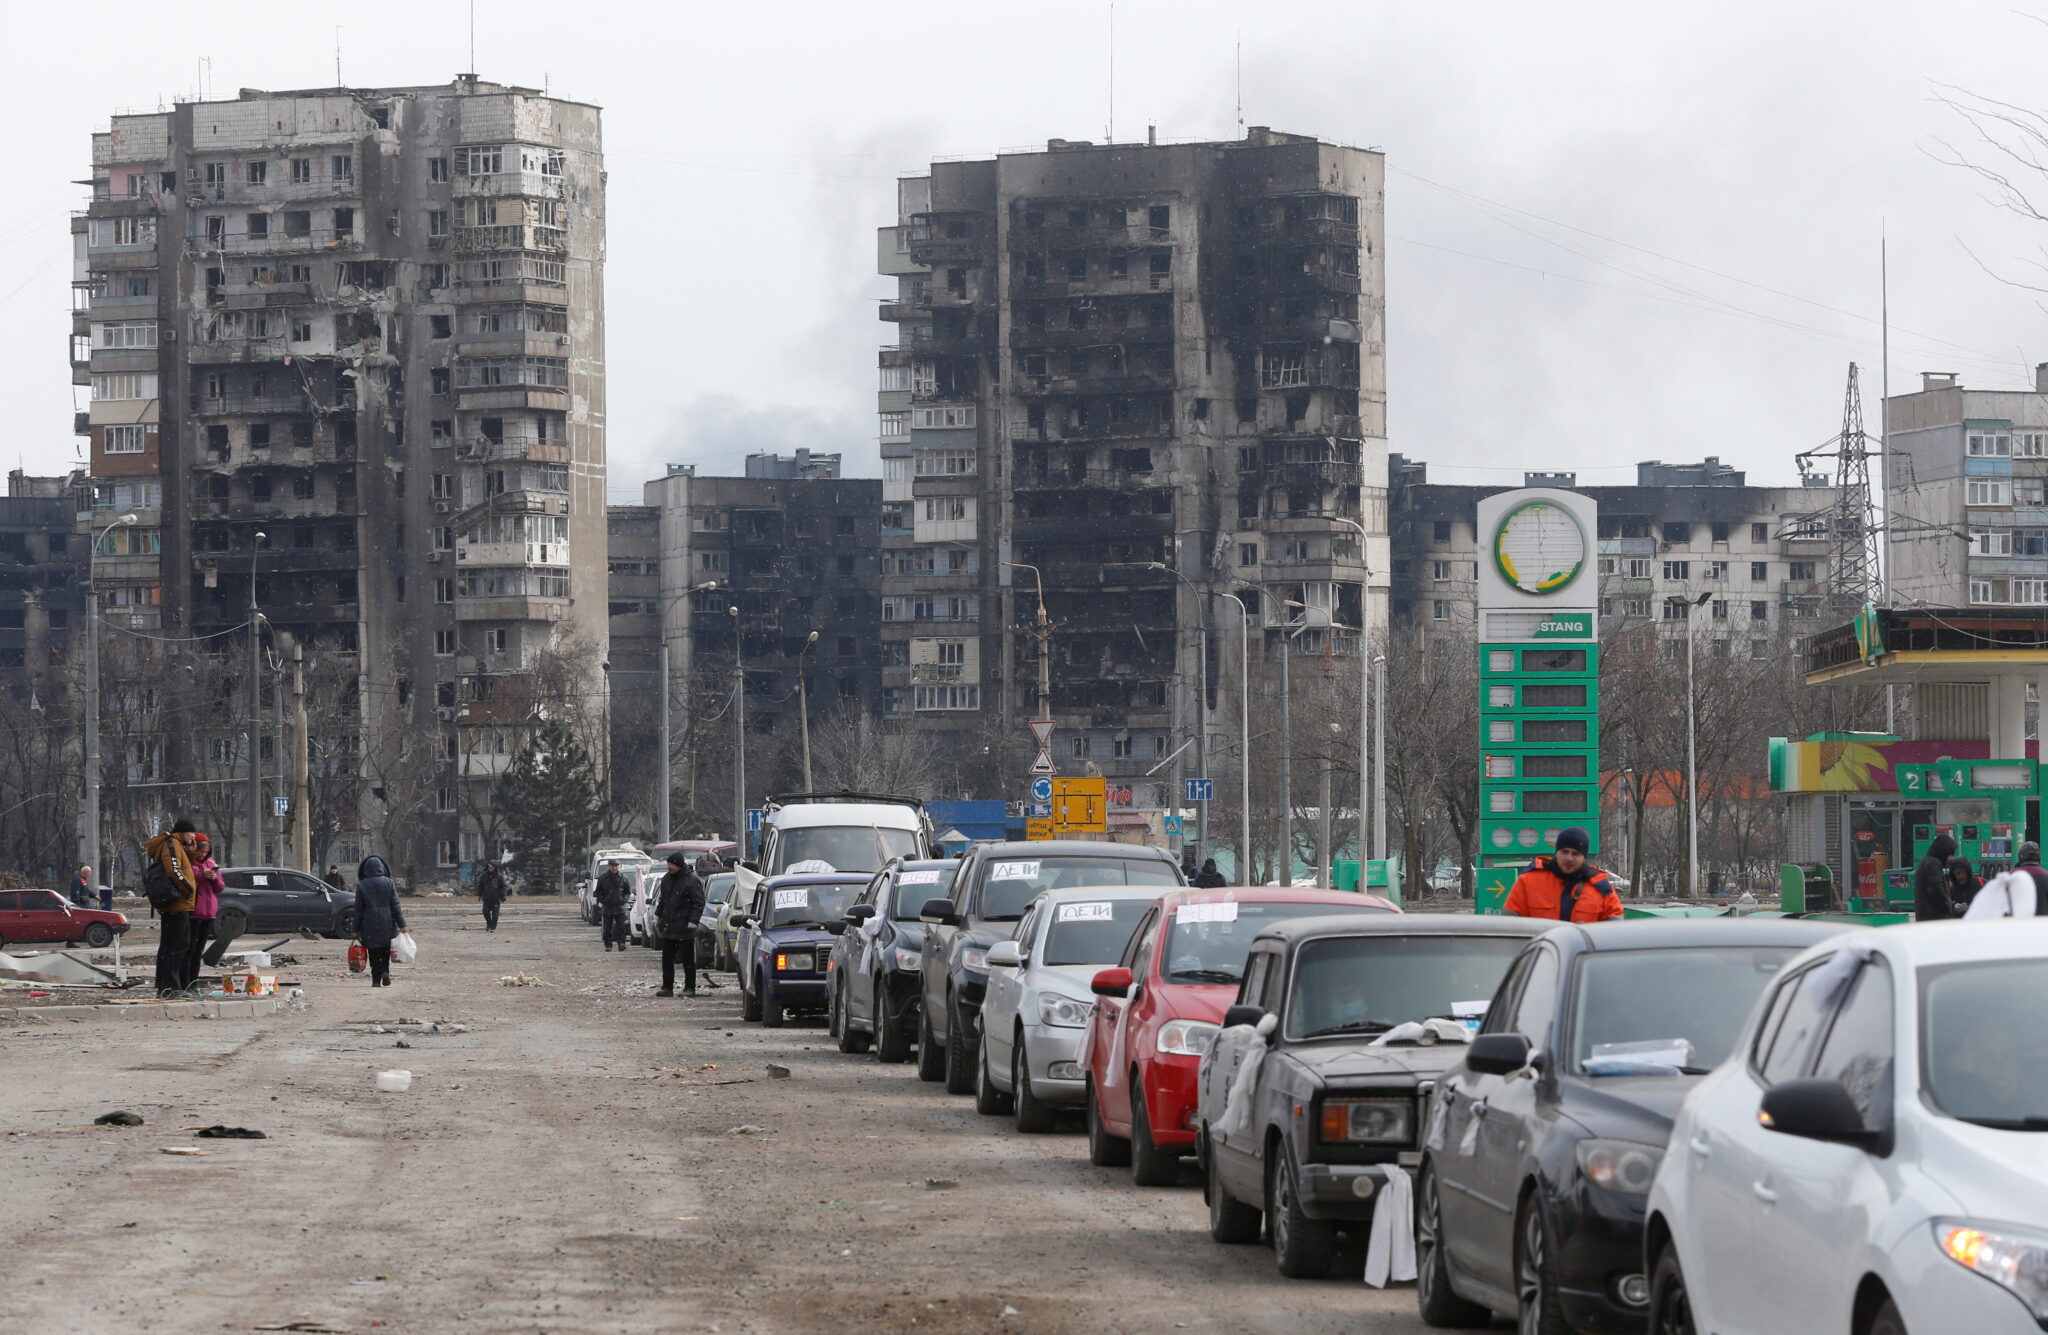  Вереница автомобилей, покидающих город, в микрорайоне, разрушенном во время обстрелов. Мариуполь, Украина, 17 марта 2022 года. © REUTERS / Alexander Ermochenko / Scanpix / Leta 